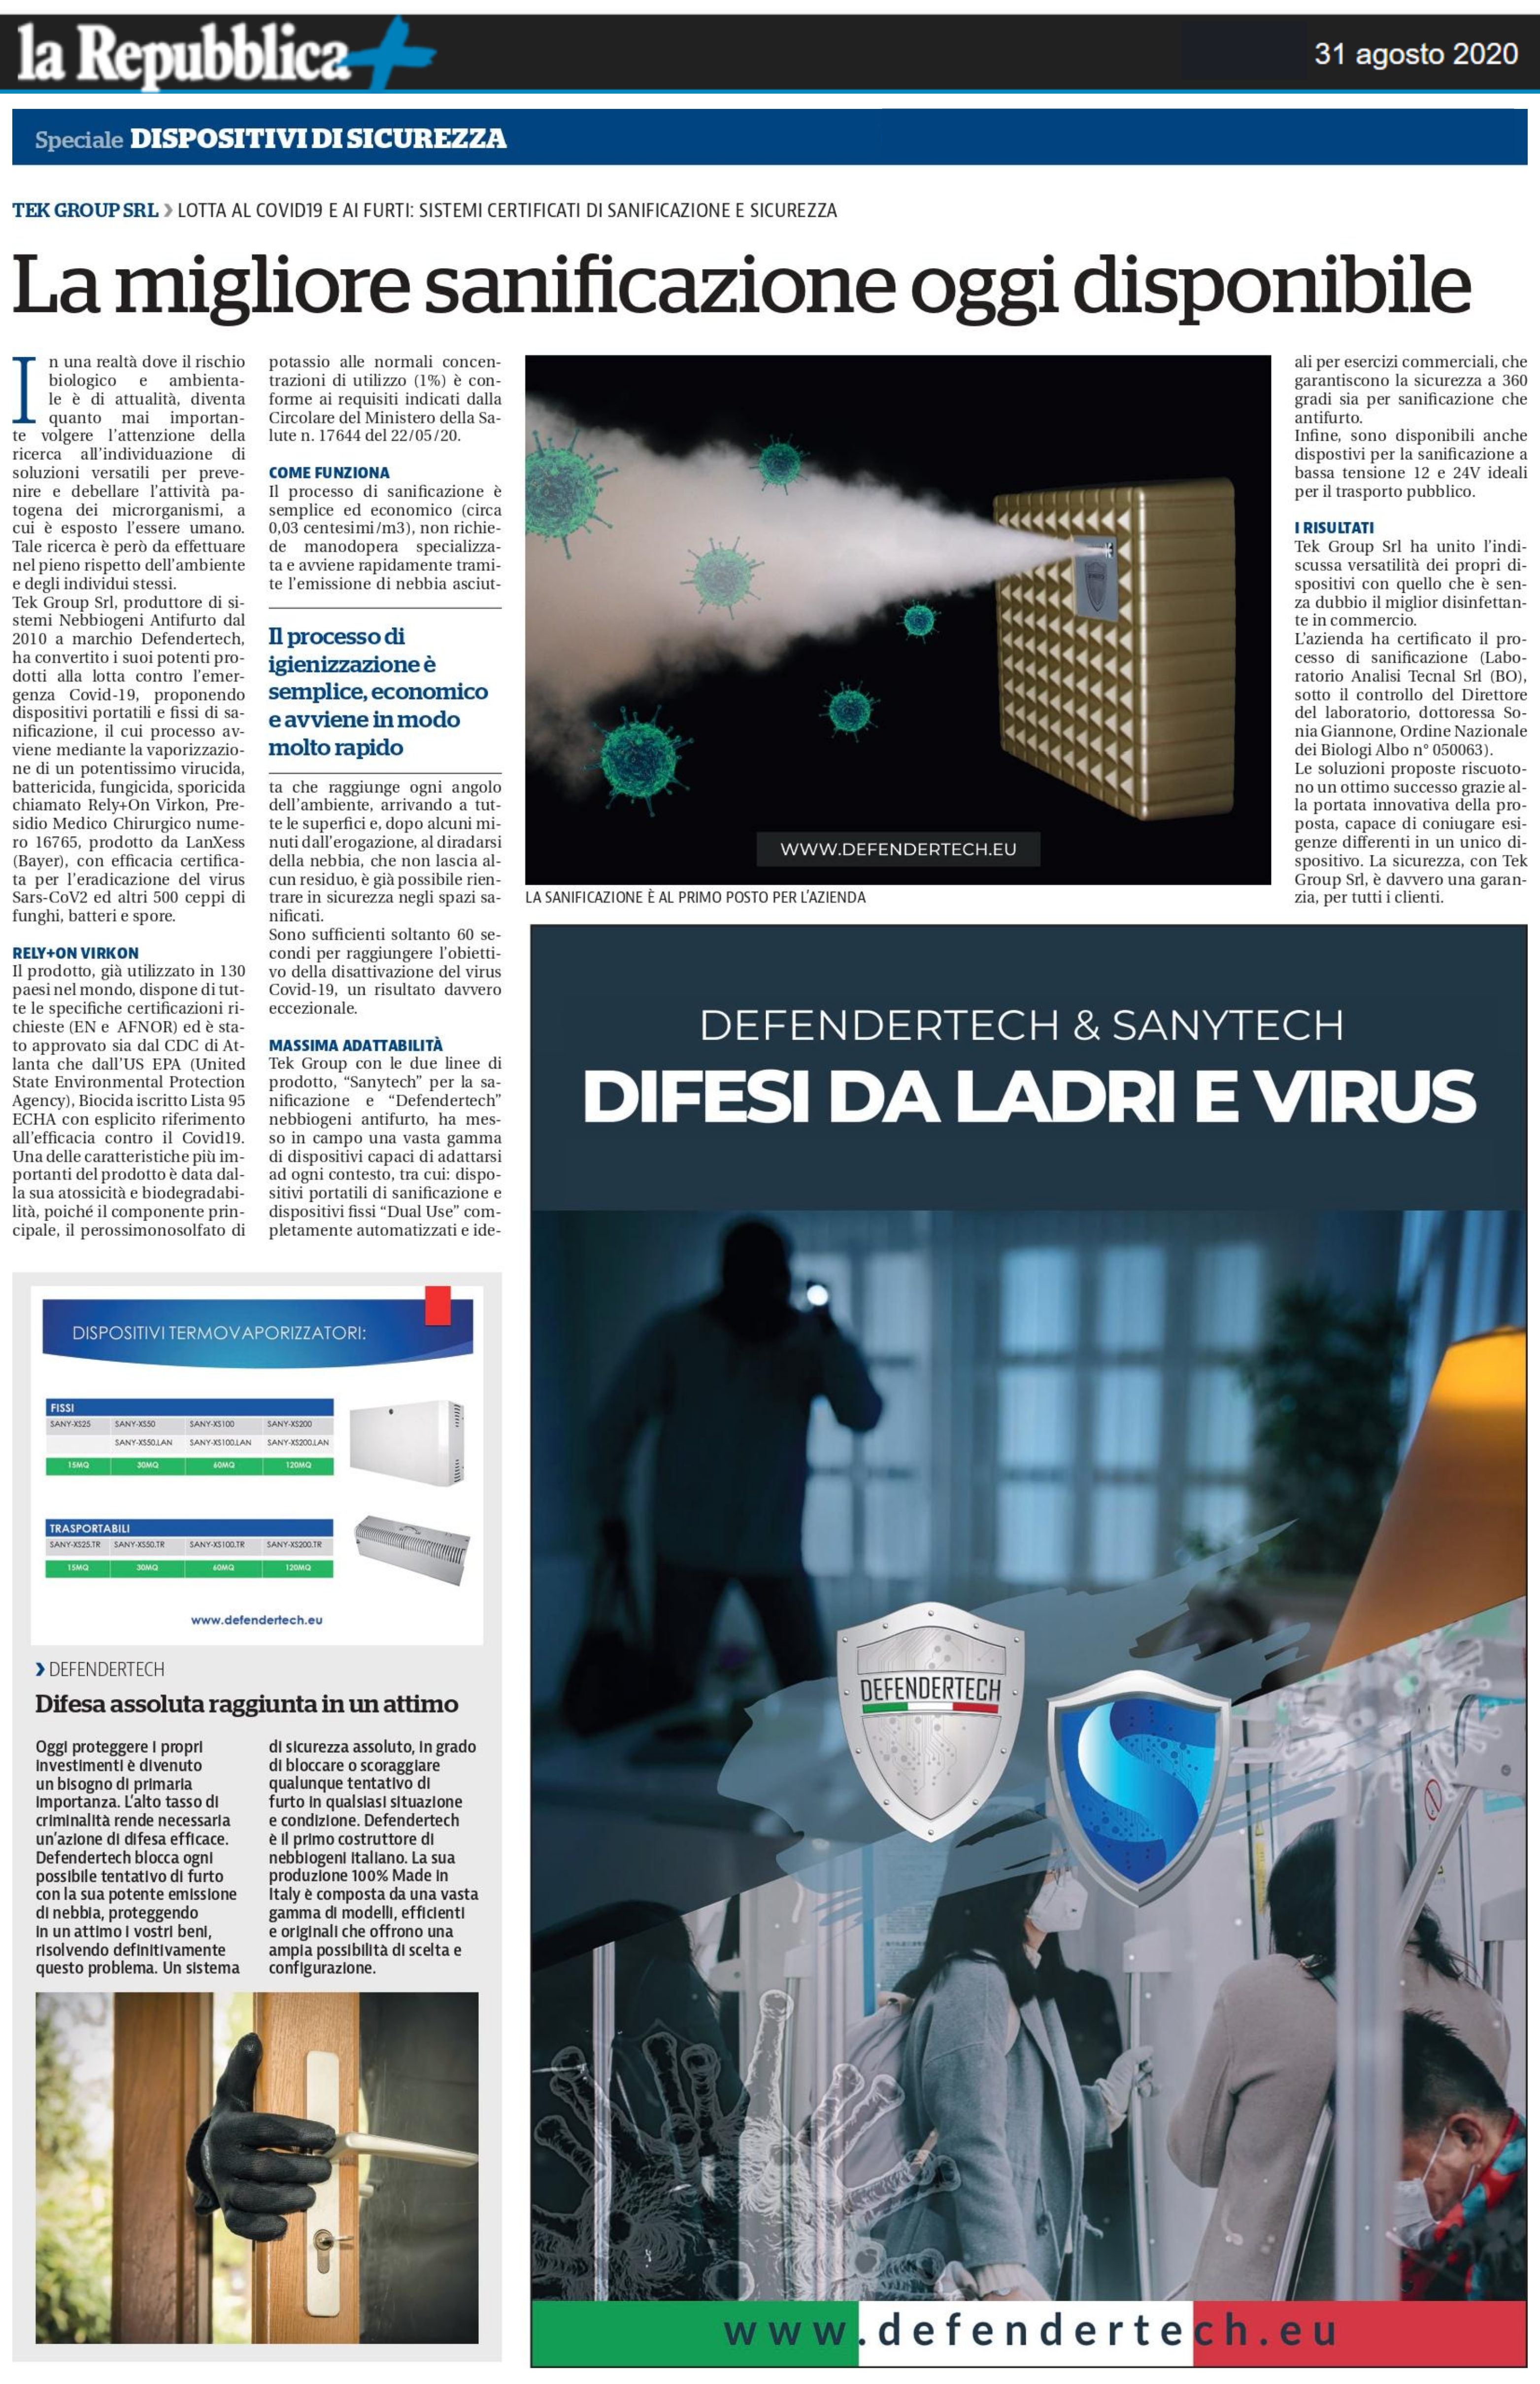 Articolo La Repubblica 31_08_20 Pagina Completa